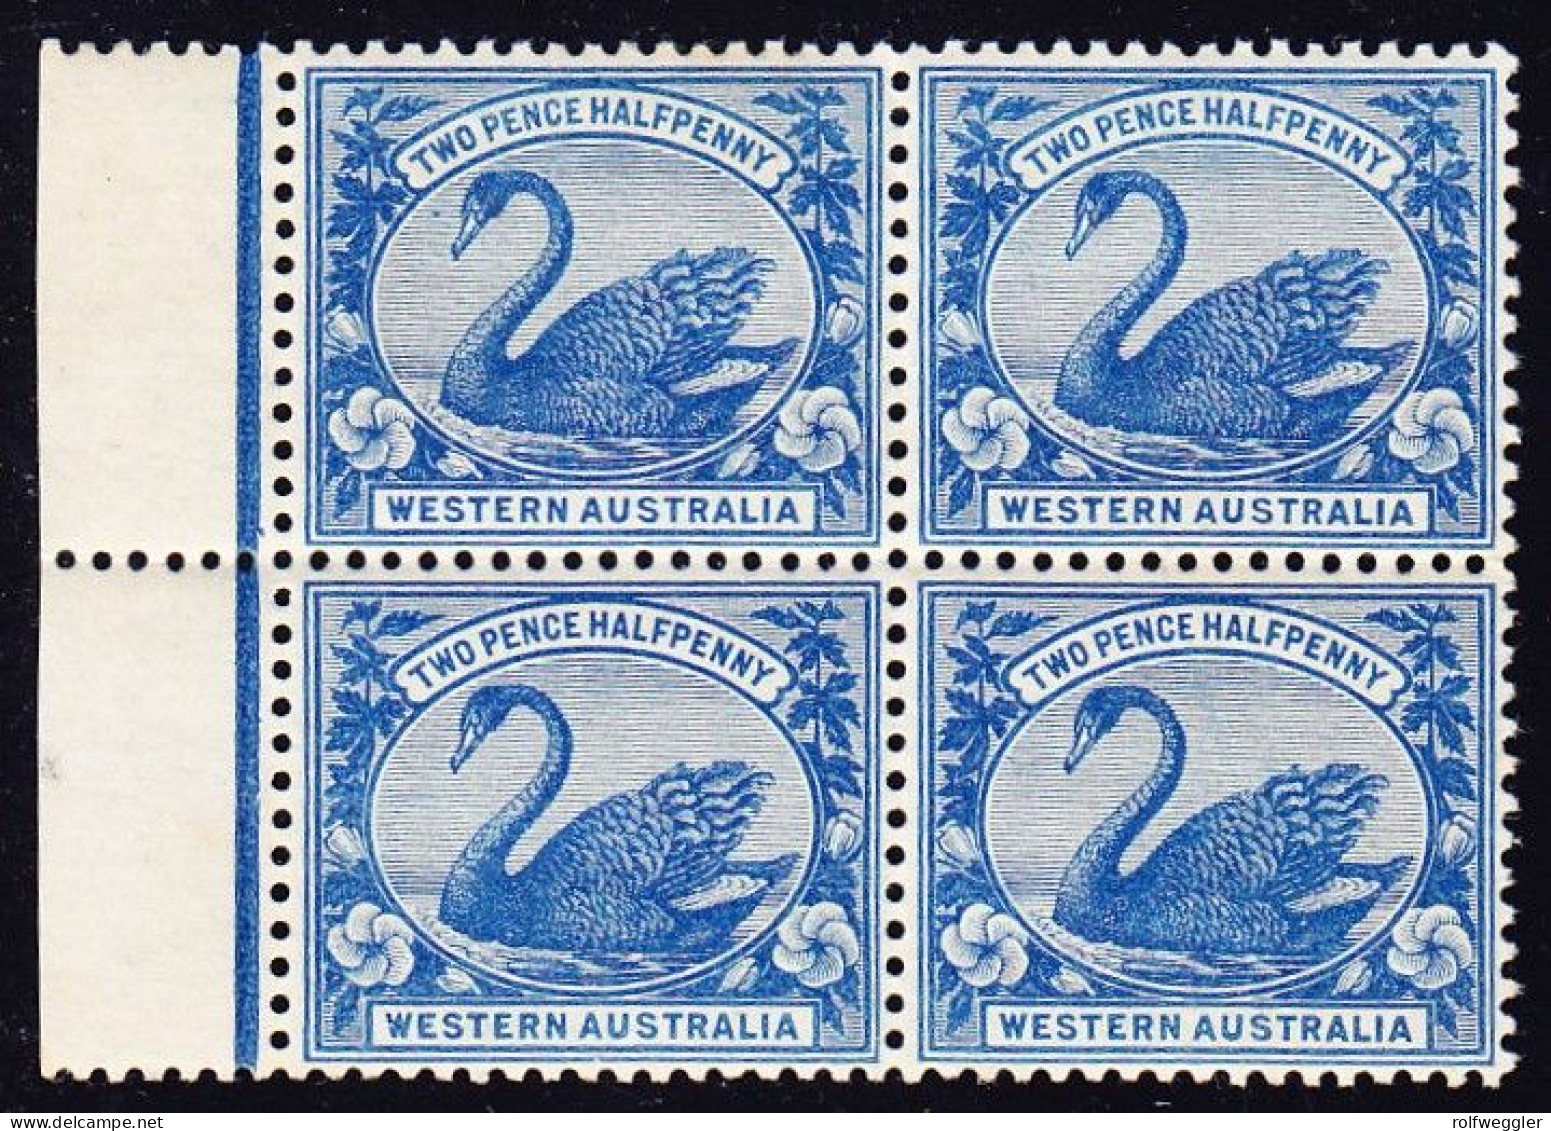 1901 2 1/2d Blau Postfrisch 4er Block Mit Bogenrand. - Neufs